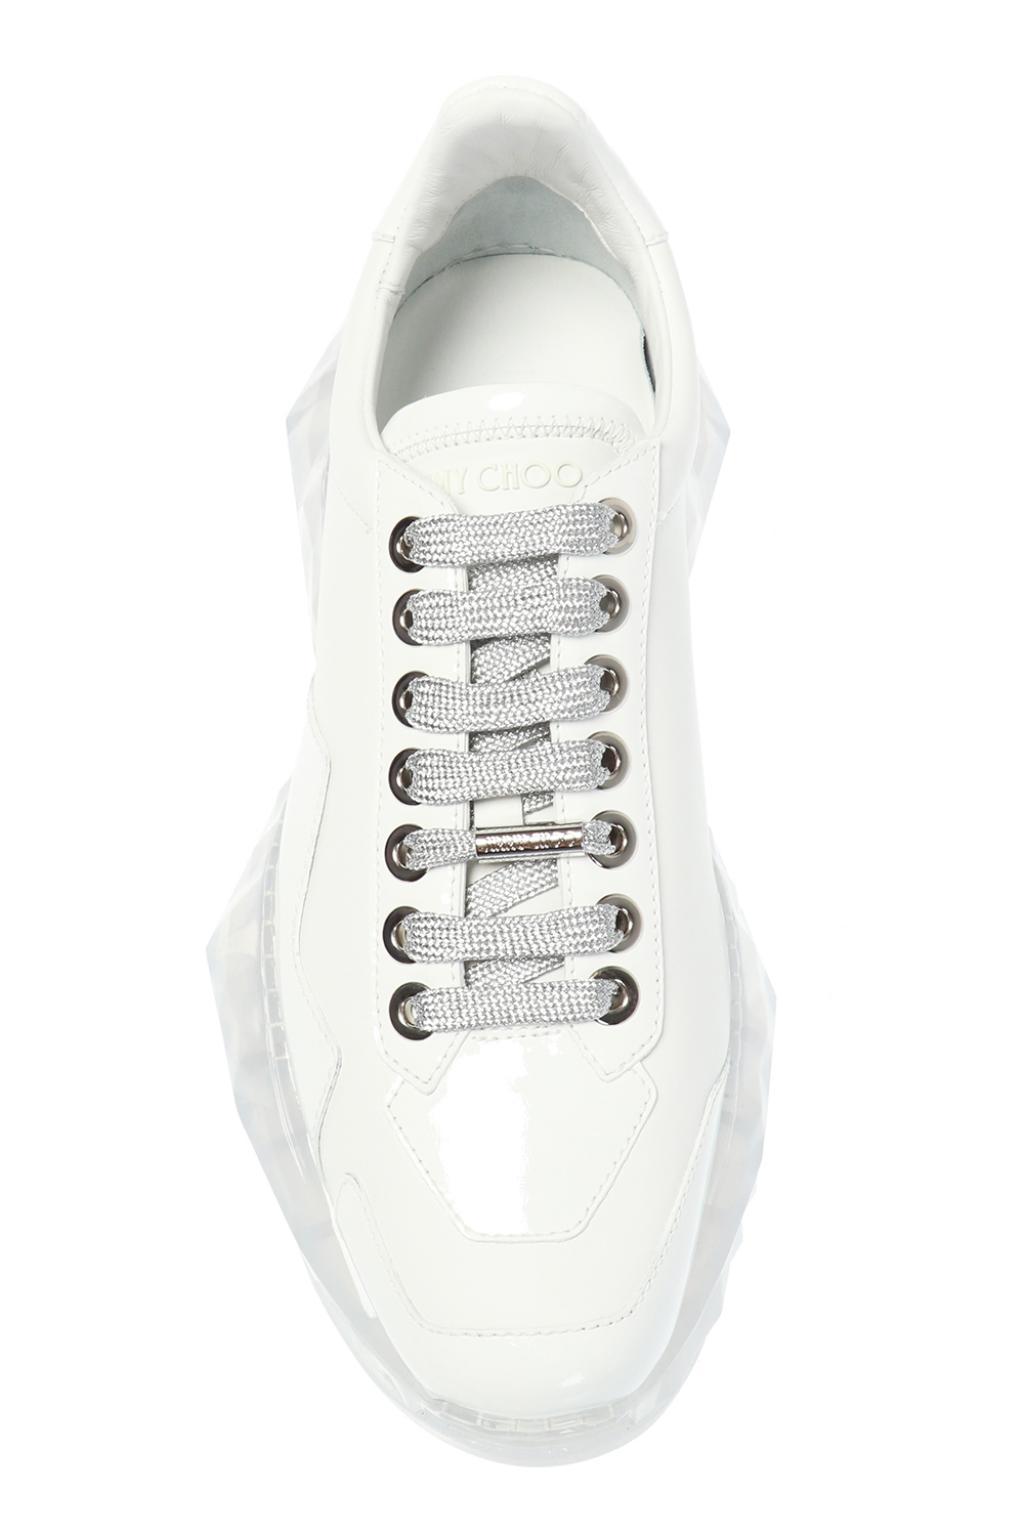 Lyst - Jimmy Choo 'diamond' Sport Shoes in White